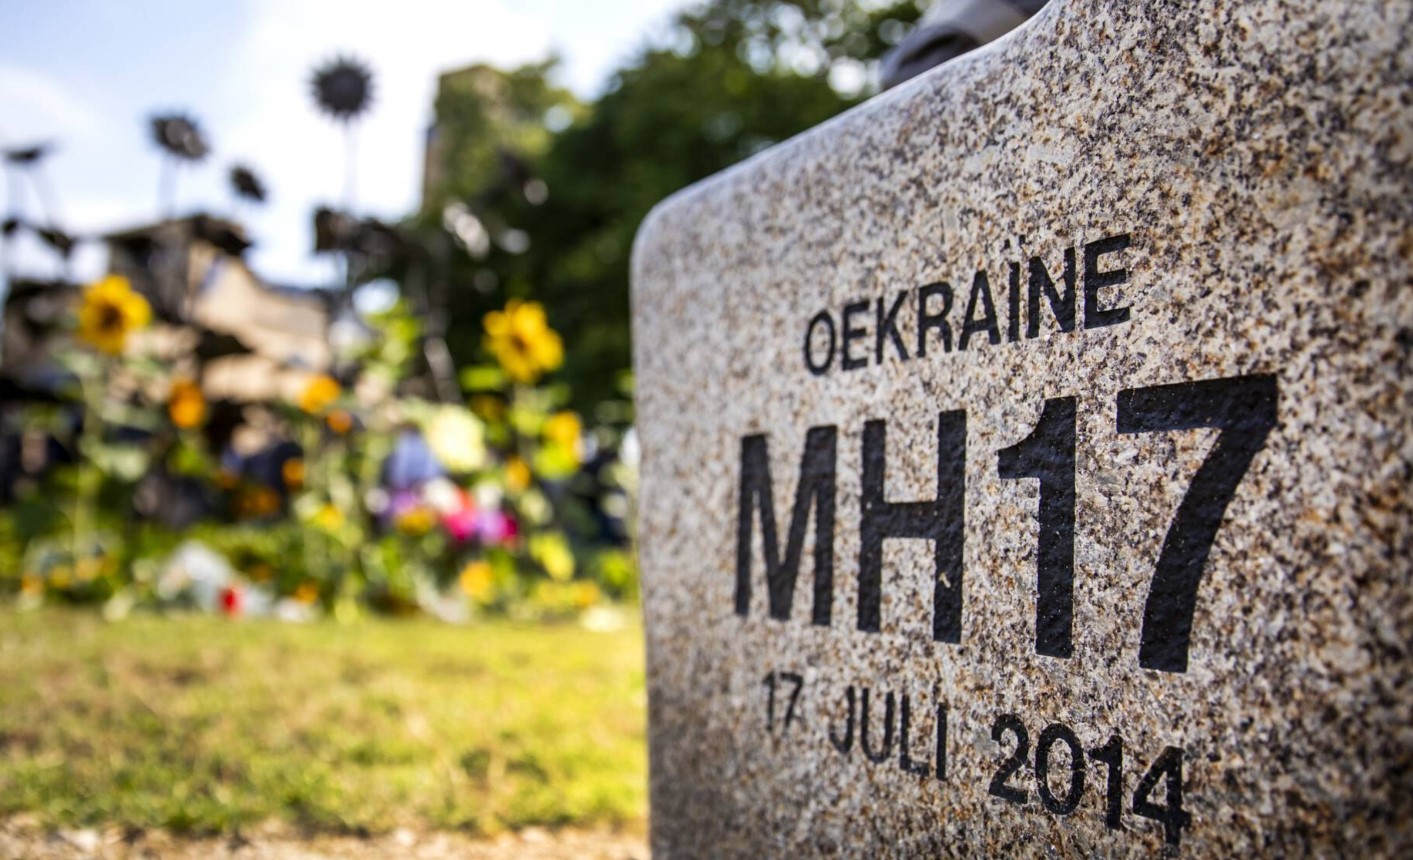 Посол Украины: Киеву нечего скрывать по делу MH17